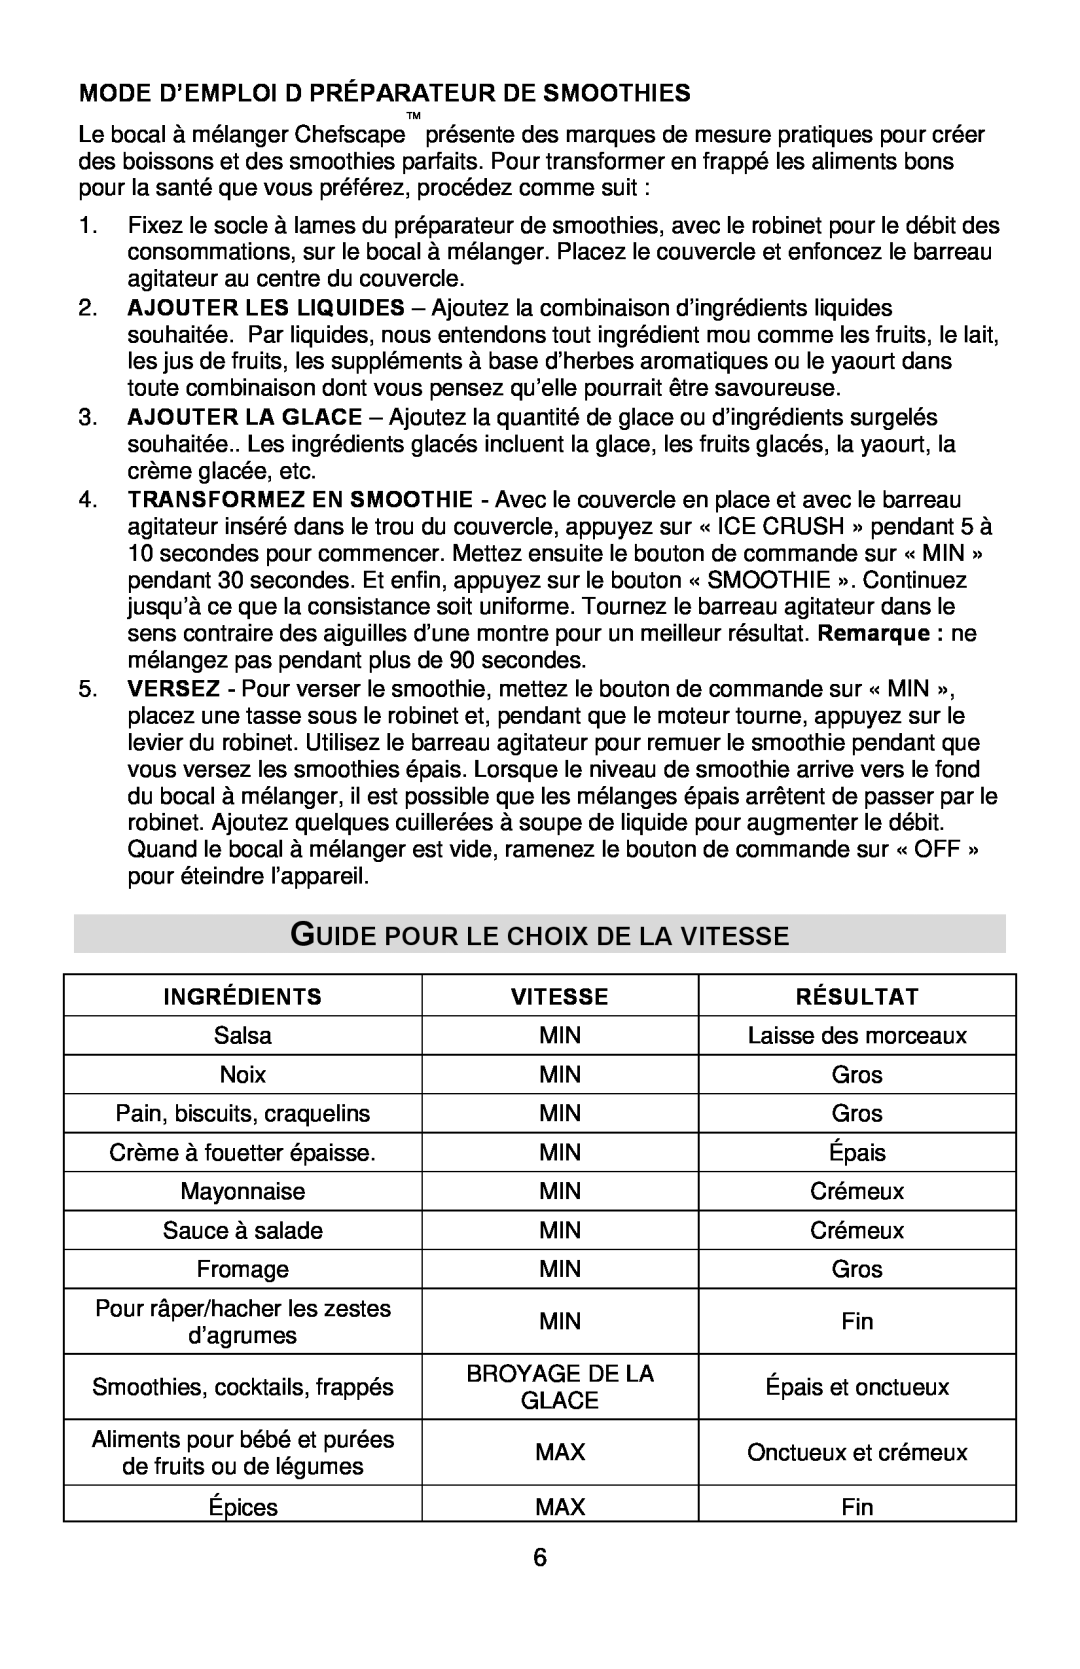 West Bend PBL1000 Guide Pour Le Choix De La Vitesse, Mode D’Emploi D Préparateur De Smoothies, Ingrédients, Résultat 